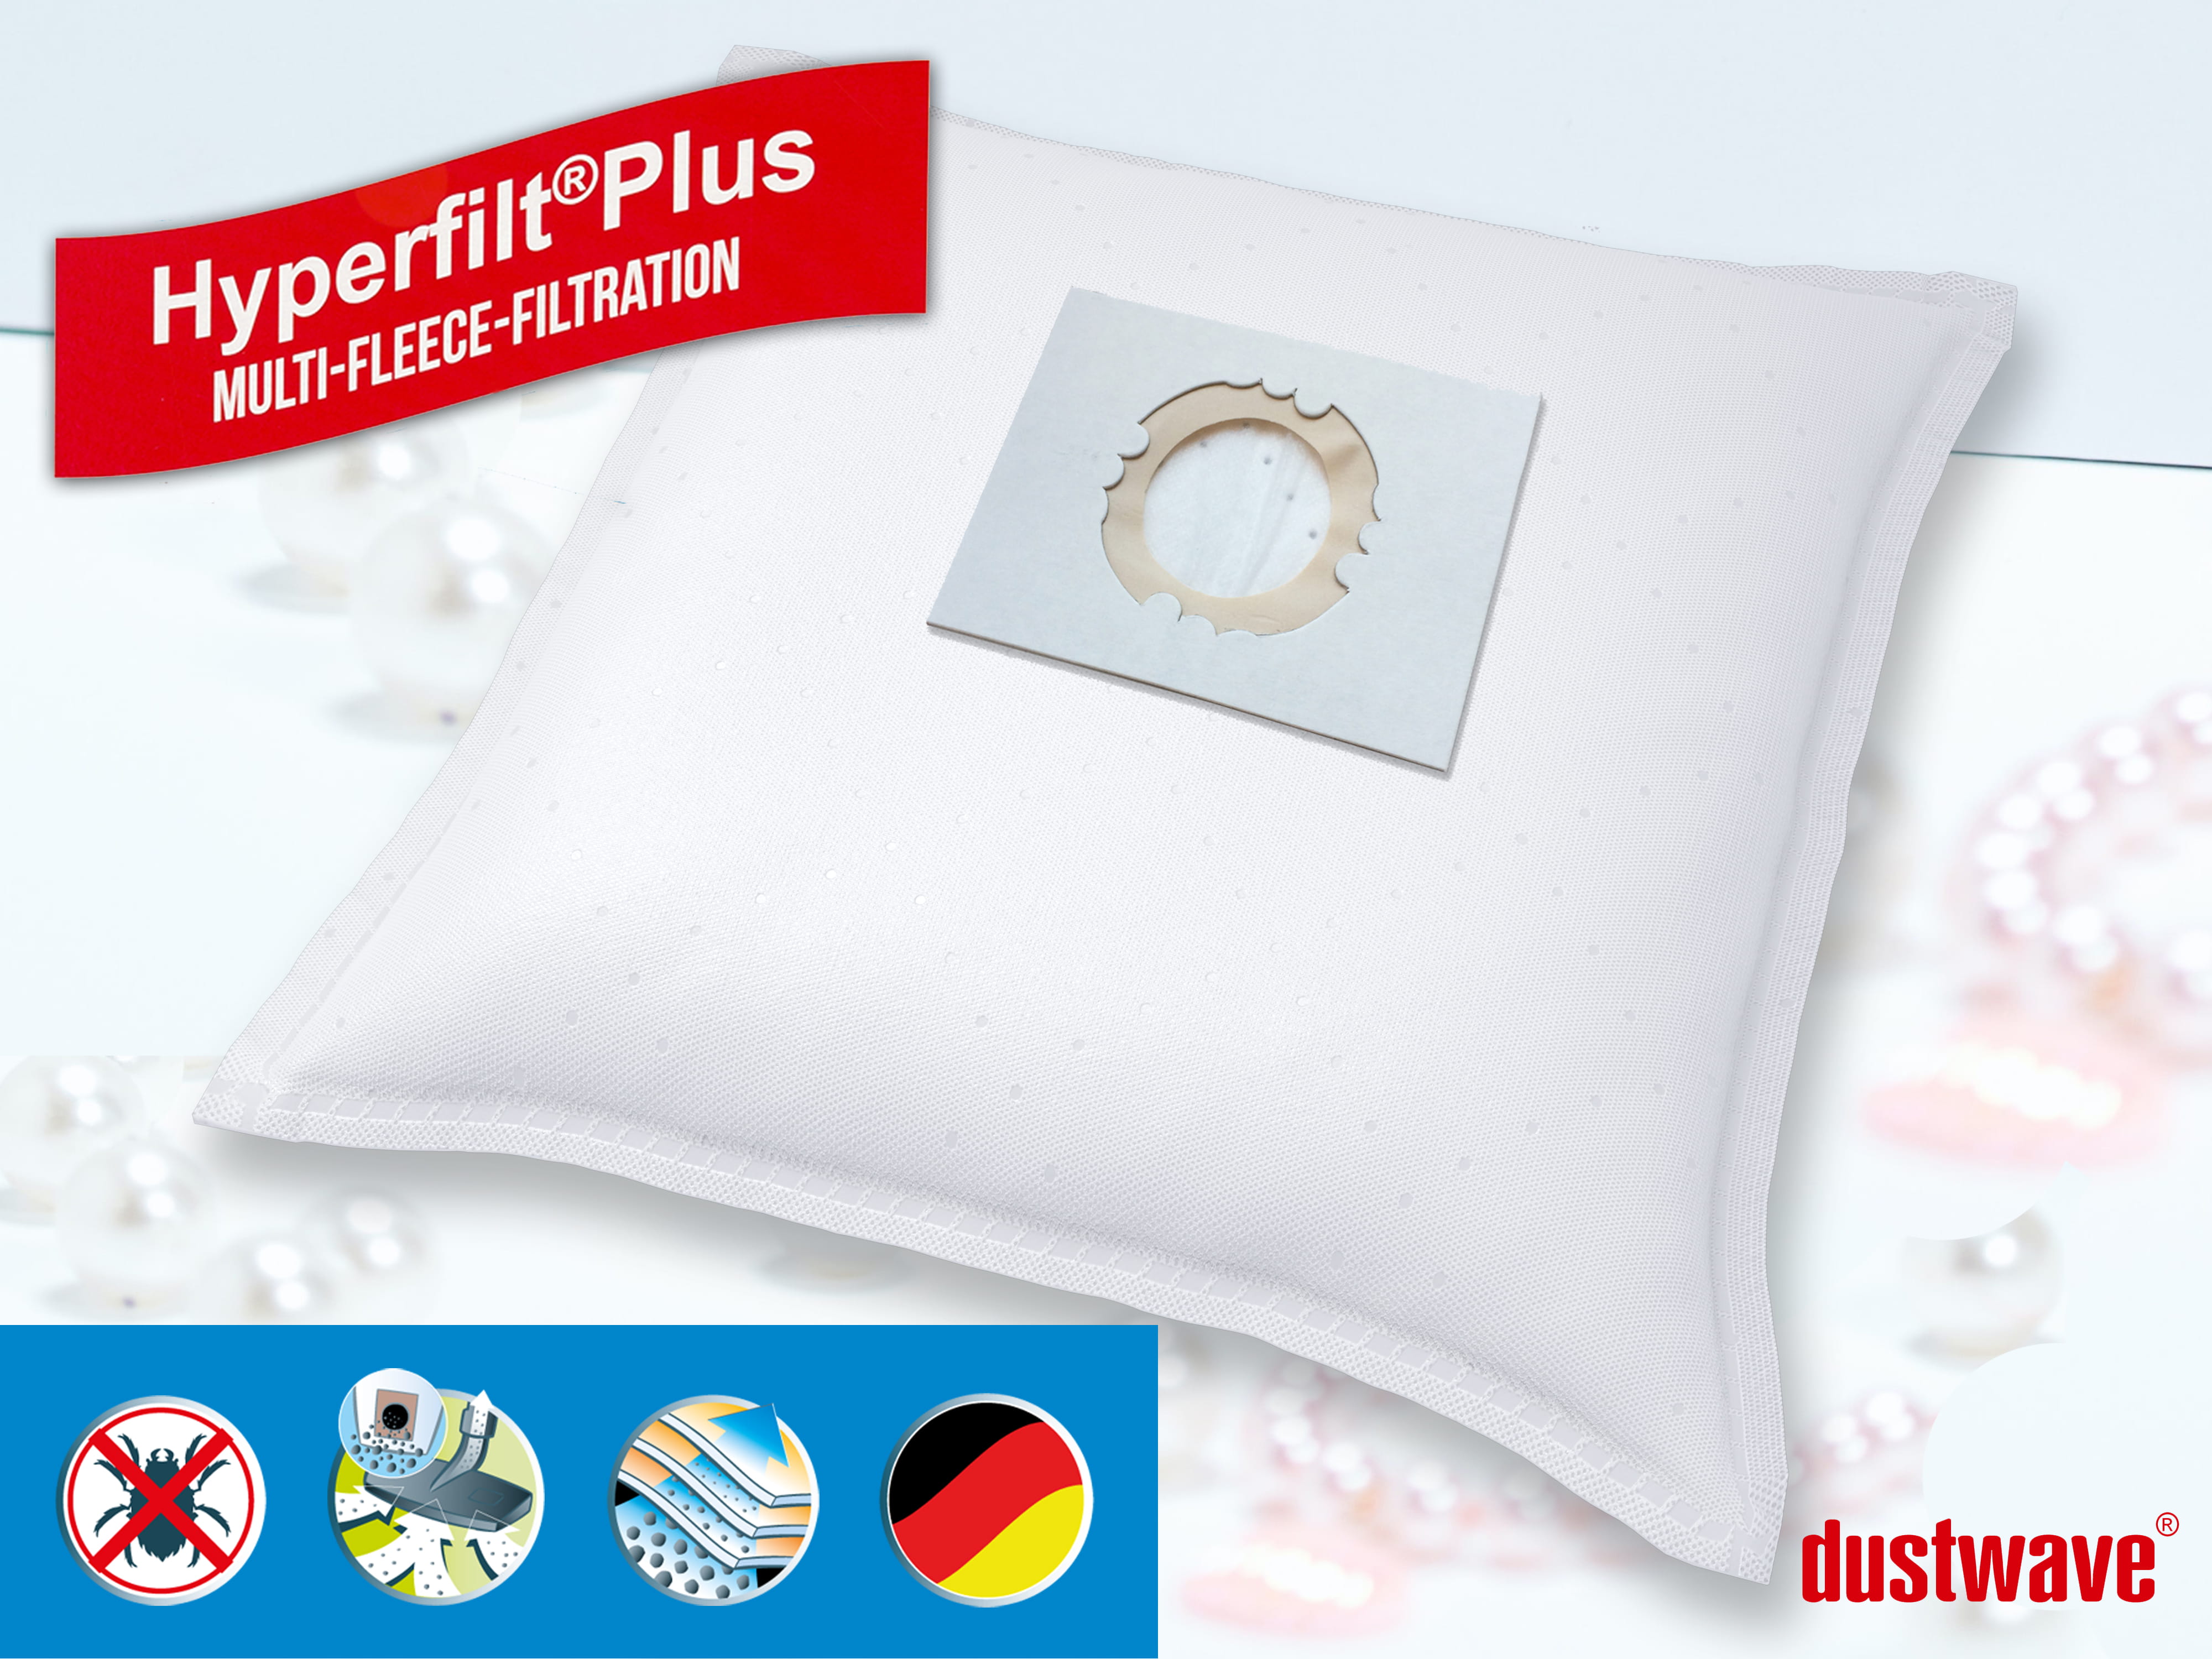 Dustwave® 10 Staubsaugerbeutel für Hoover BD S2053 011 - hocheffizient, mehrlagiges Mikrovlies mit Hygieneverschluss - Made in Germany